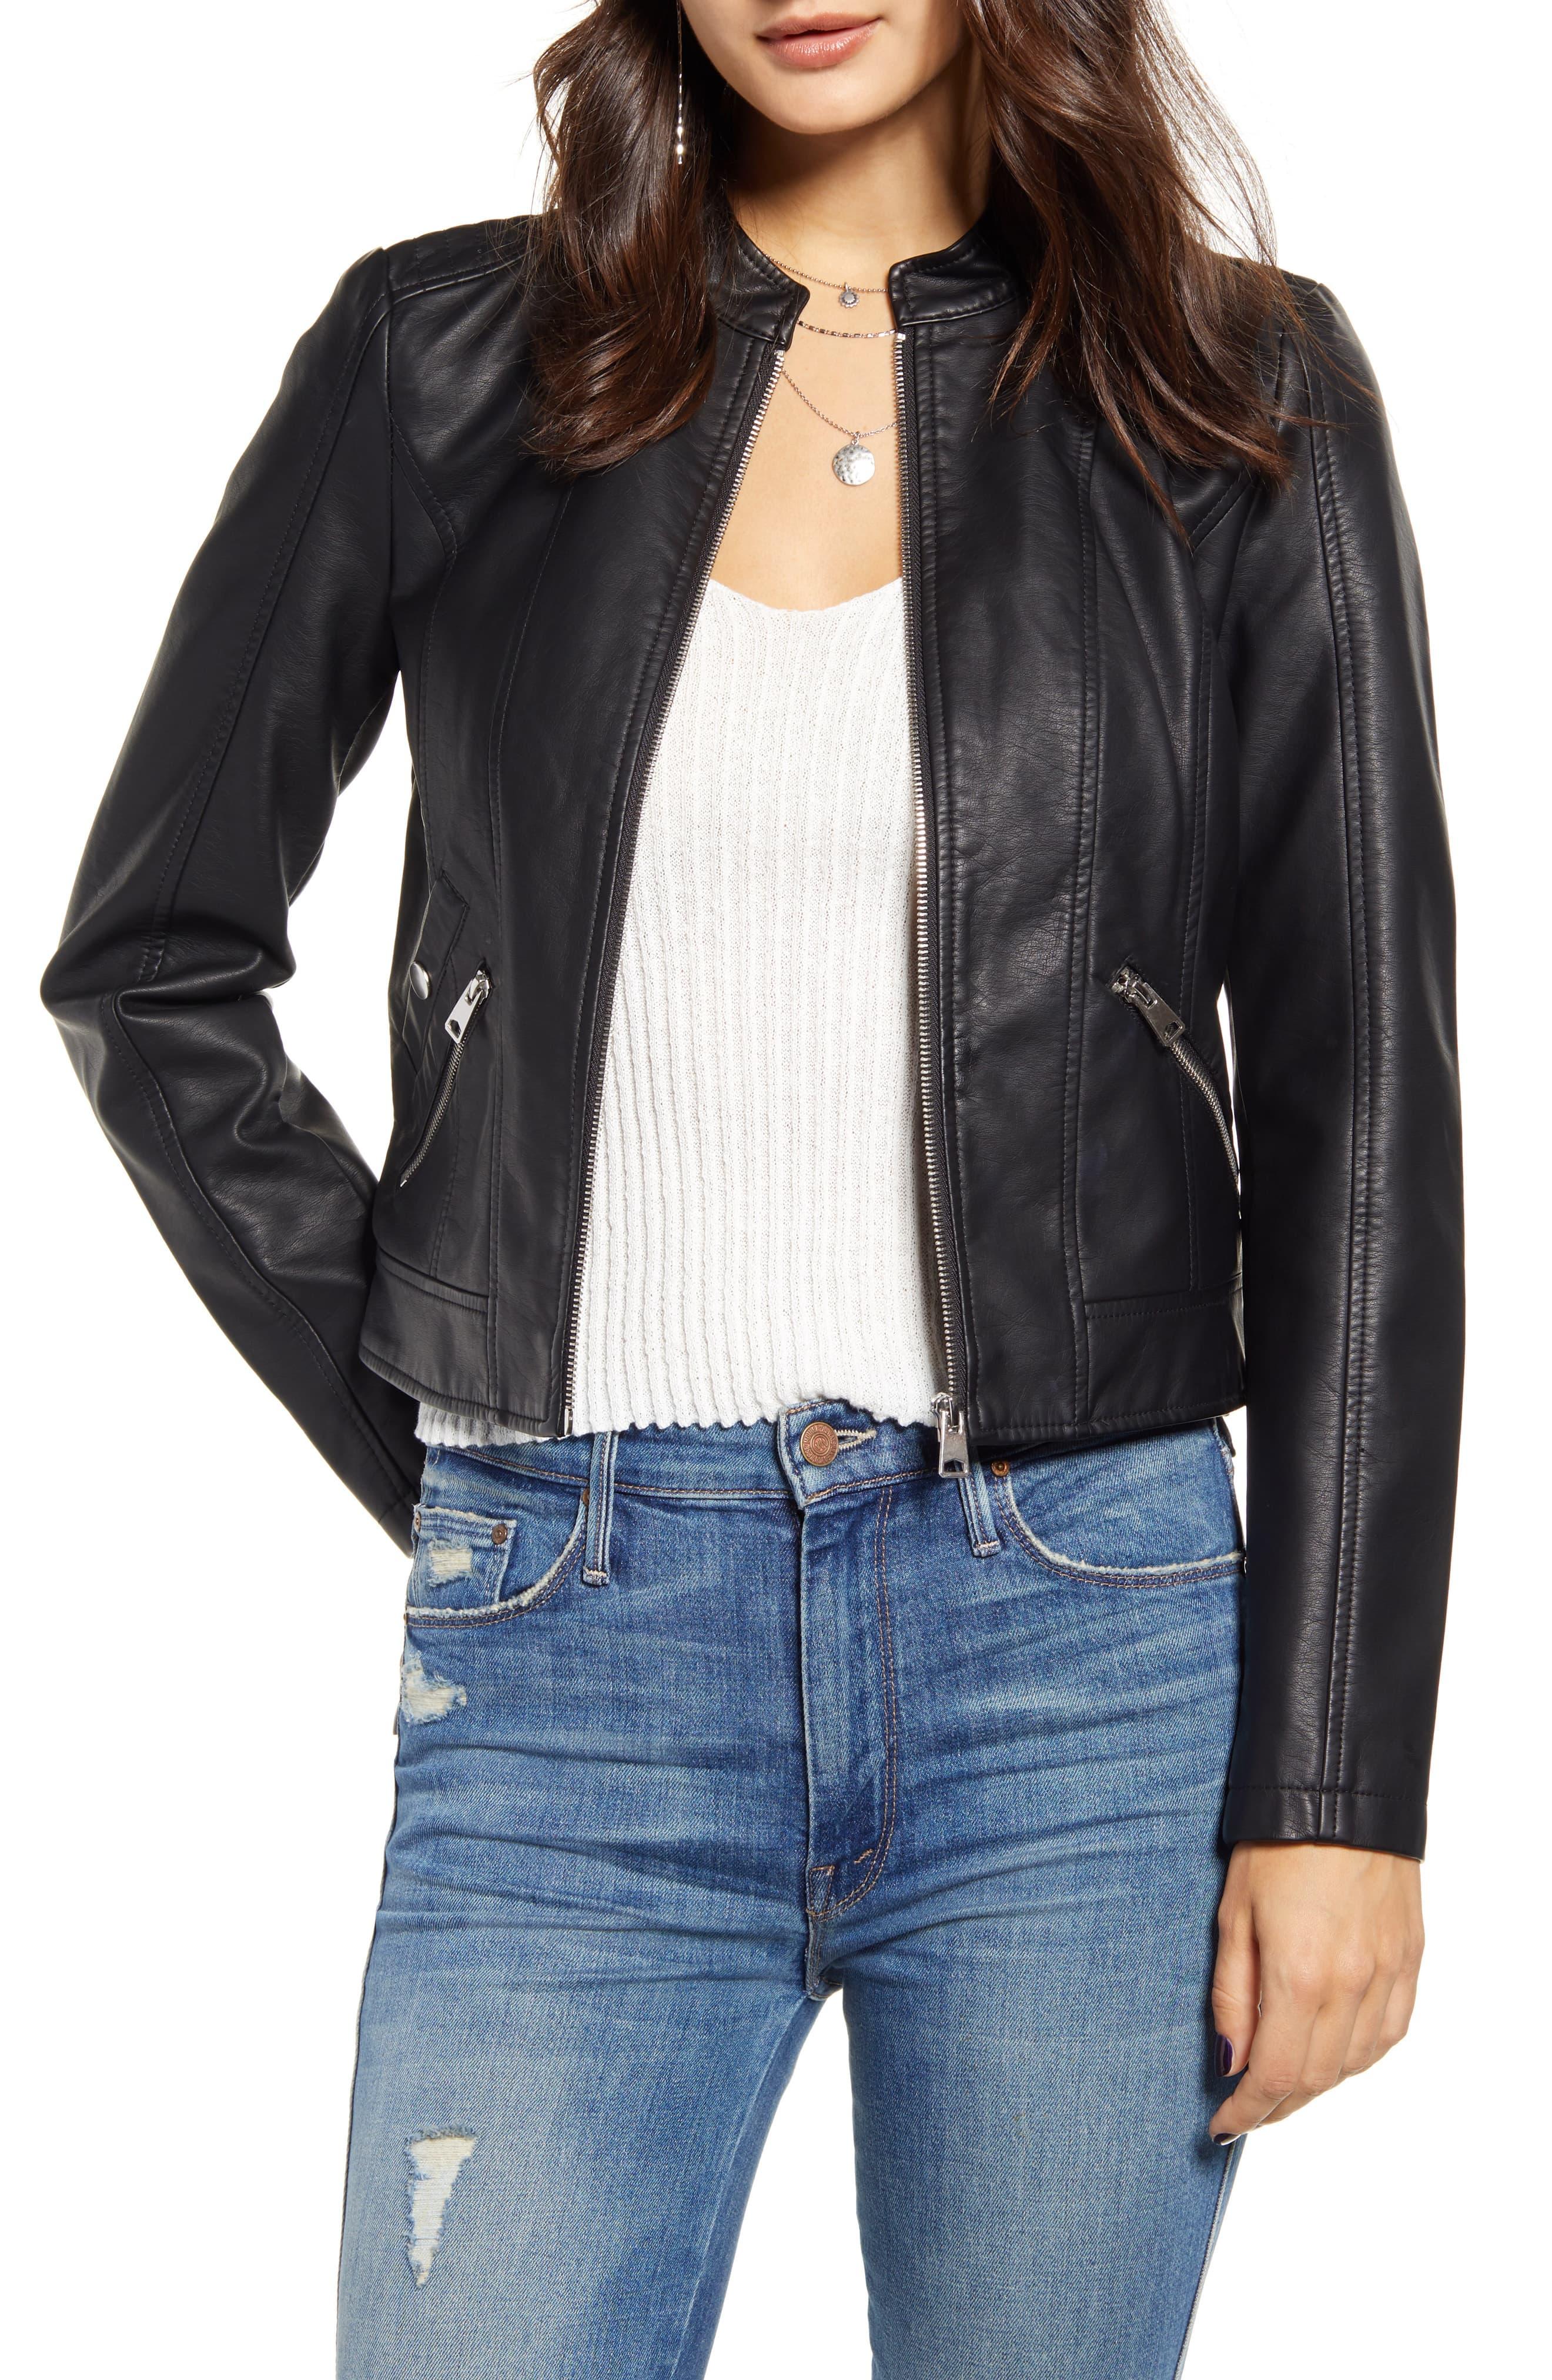 Vero Moda Khloe Faux Leather Jacket in Black - Lyst